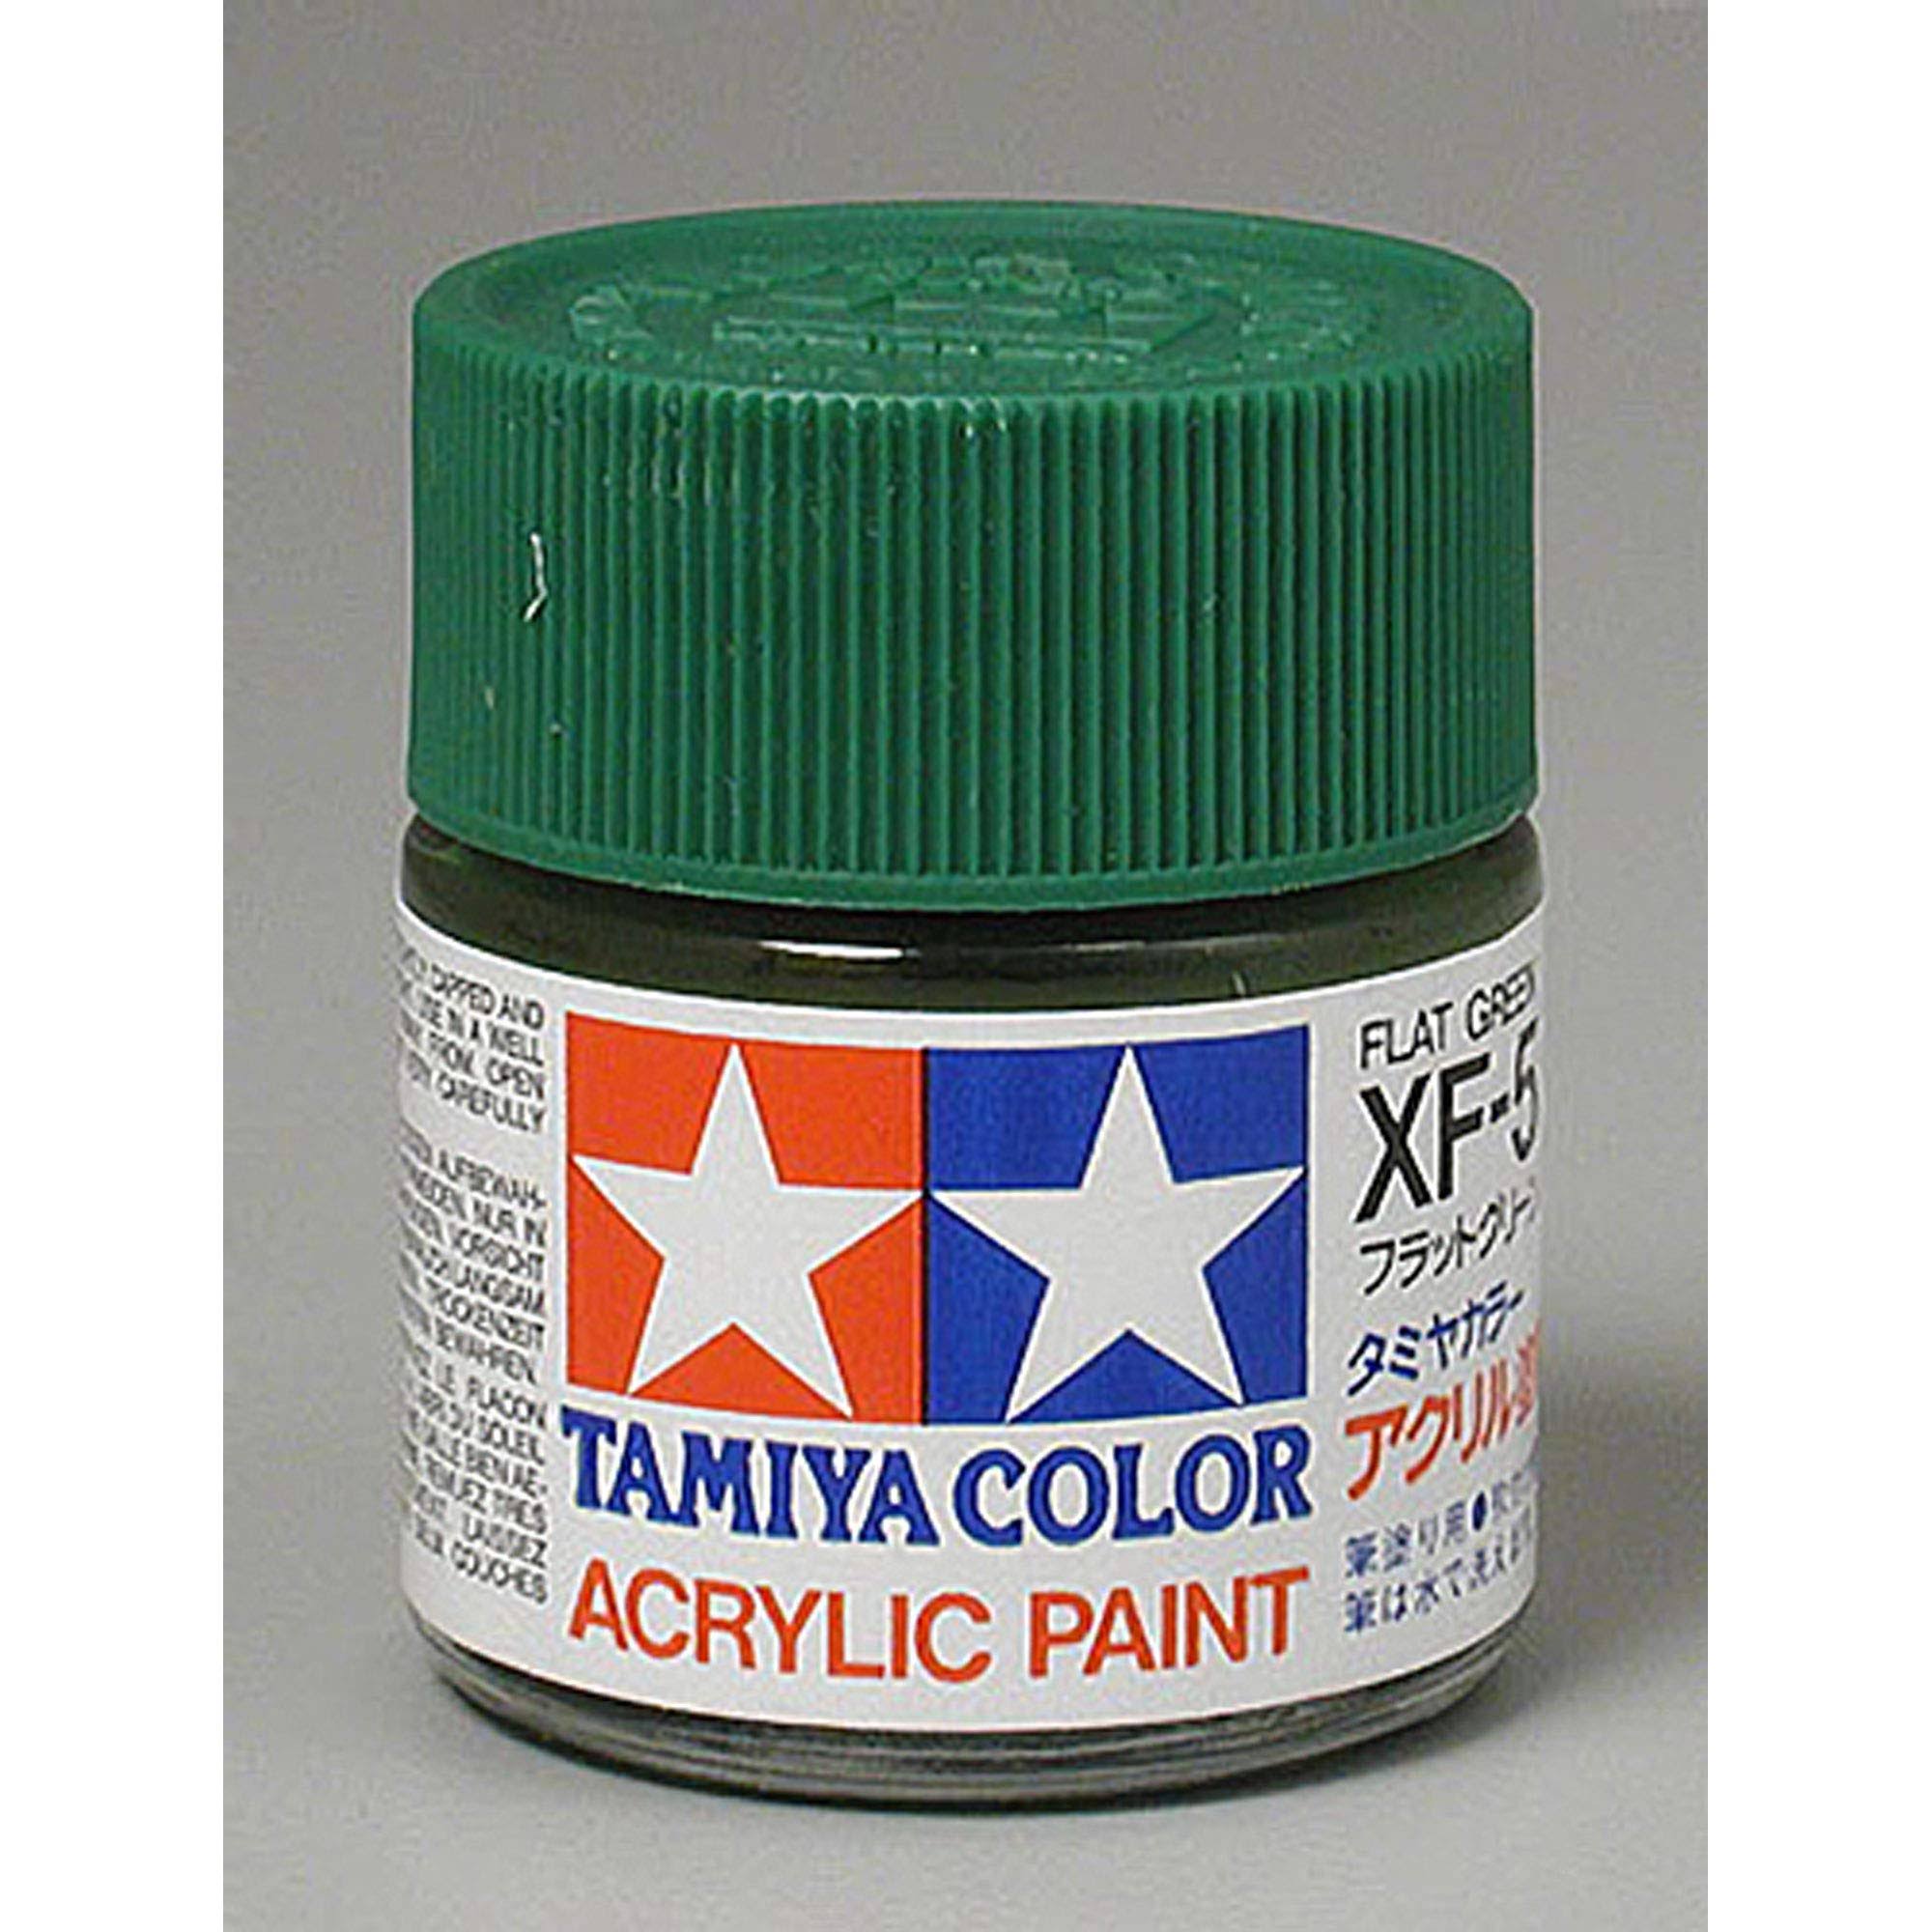 Tamiya Acrylic XF5 Flat, Green - TAM81305